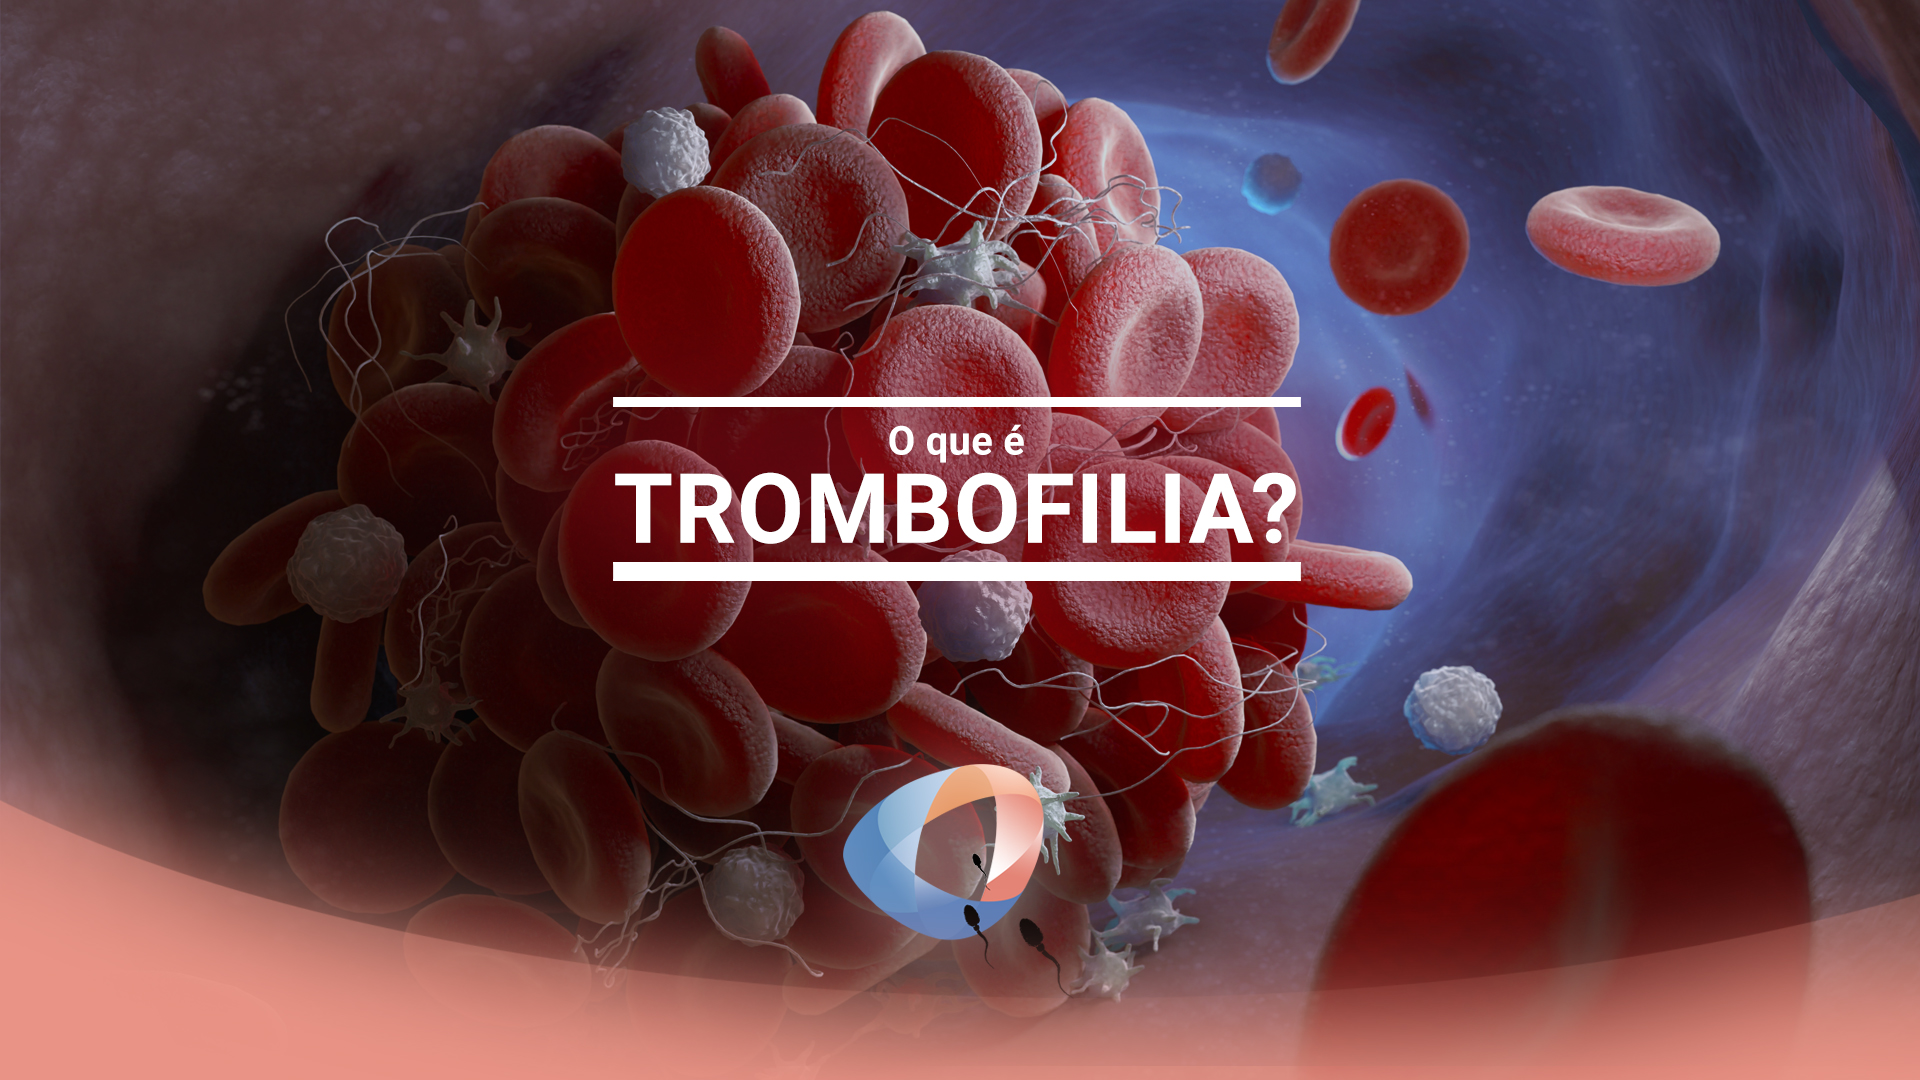 O que é trombofilia?